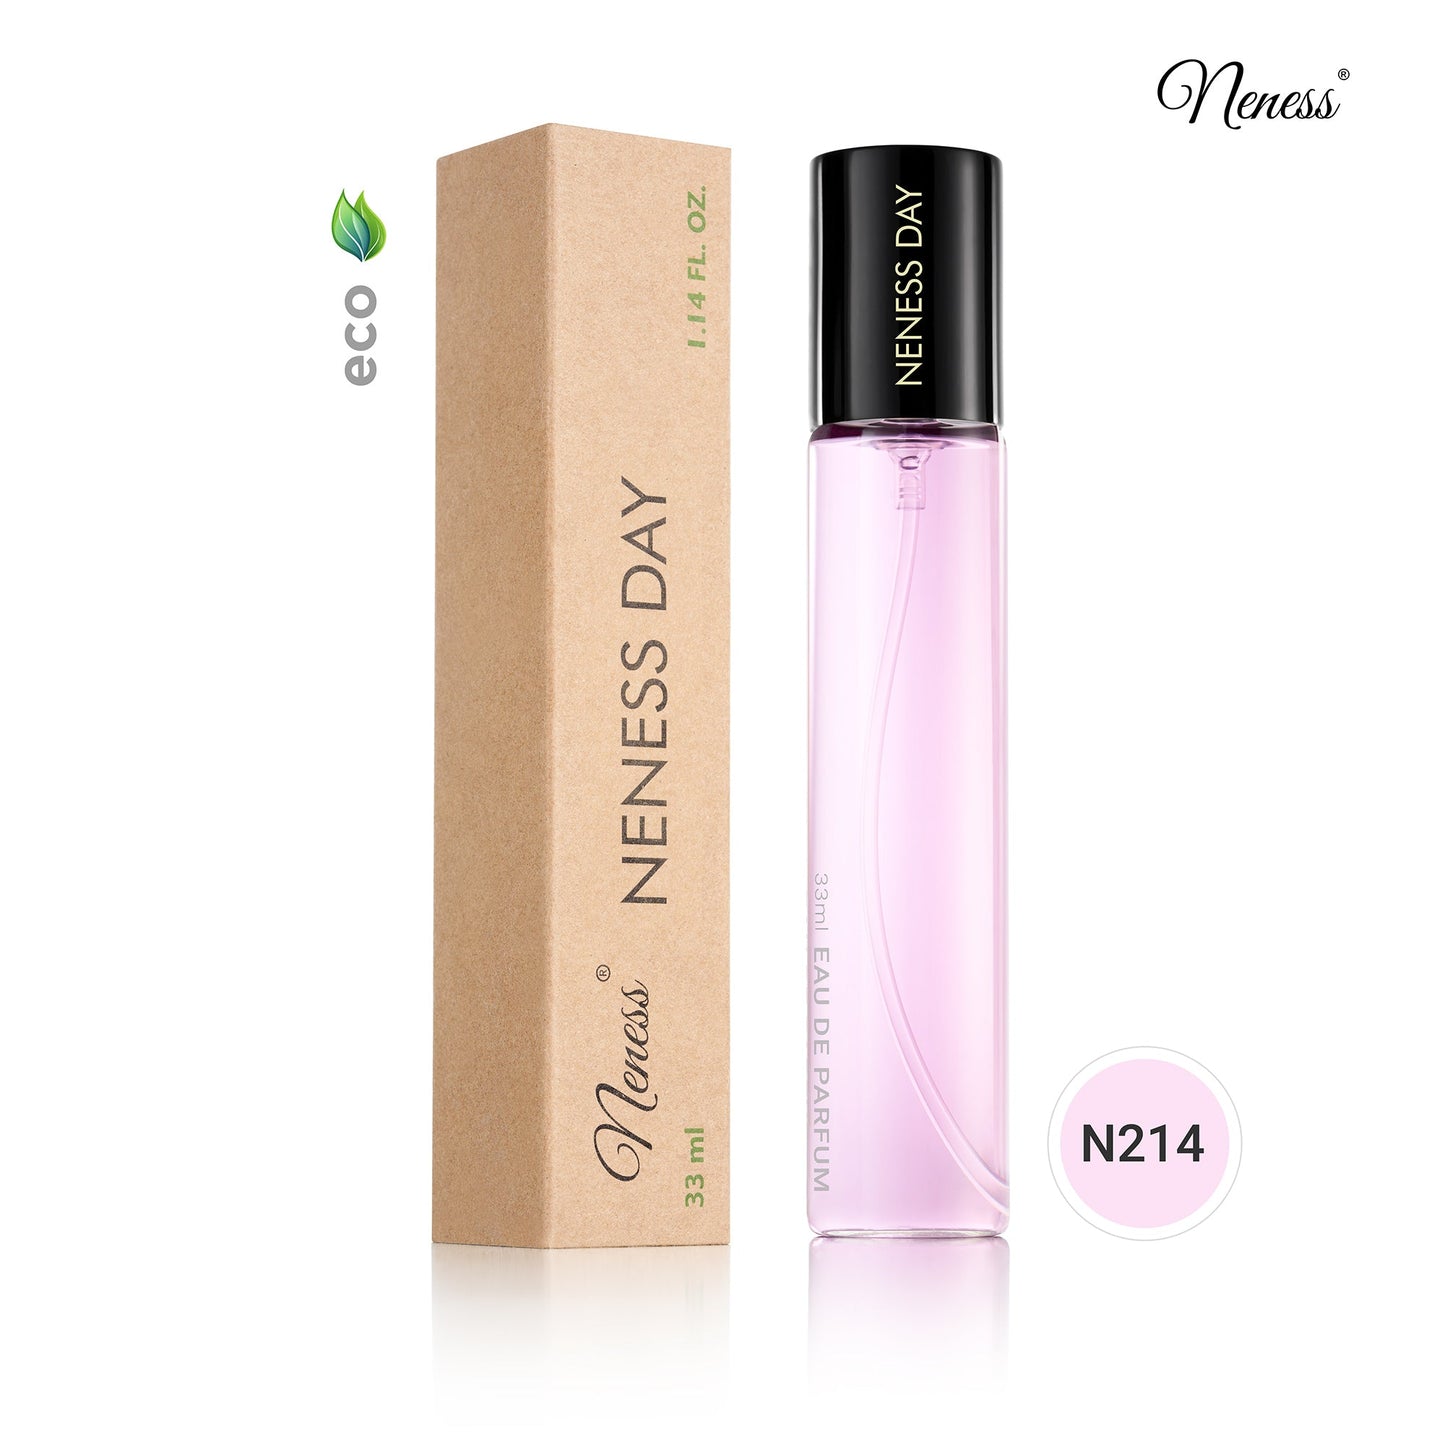 N214. Neness Day - 33 ml - Parfum Pour Femme